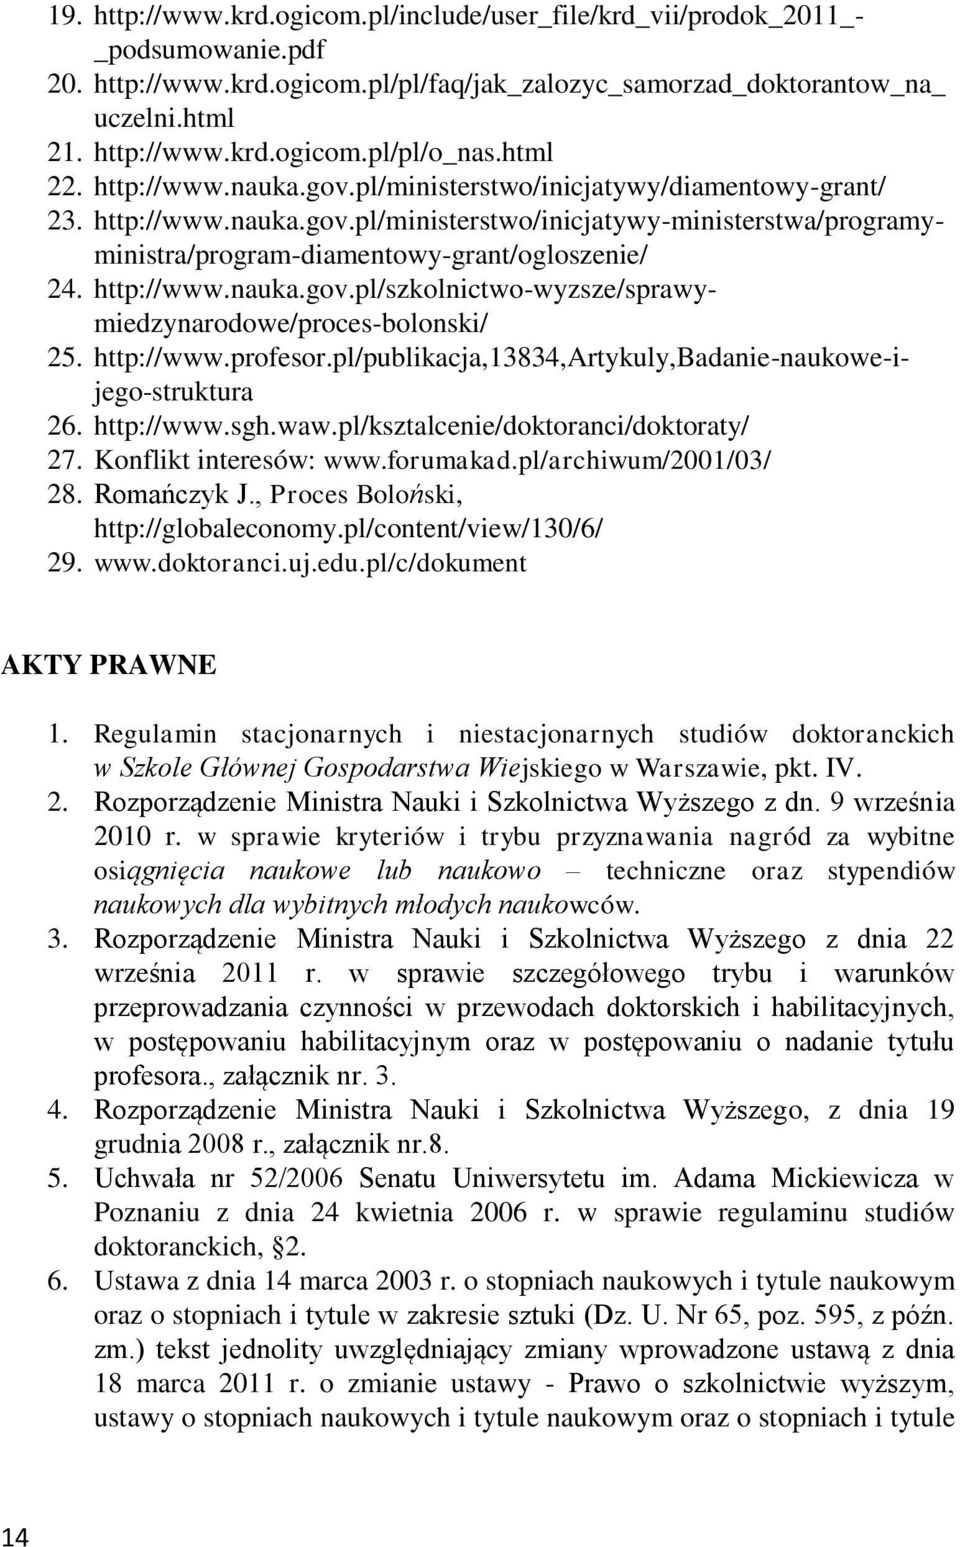 http://www.nauka.gov.pl/szkolnictwo-wyzsze/sprawymiedzynarodowe/proces-bolonski/ 25. http://www.profesor.pl/publikacja,13834,artykuly,badanie-naukowe-ijego-struktura 26. http://www.sgh.waw.